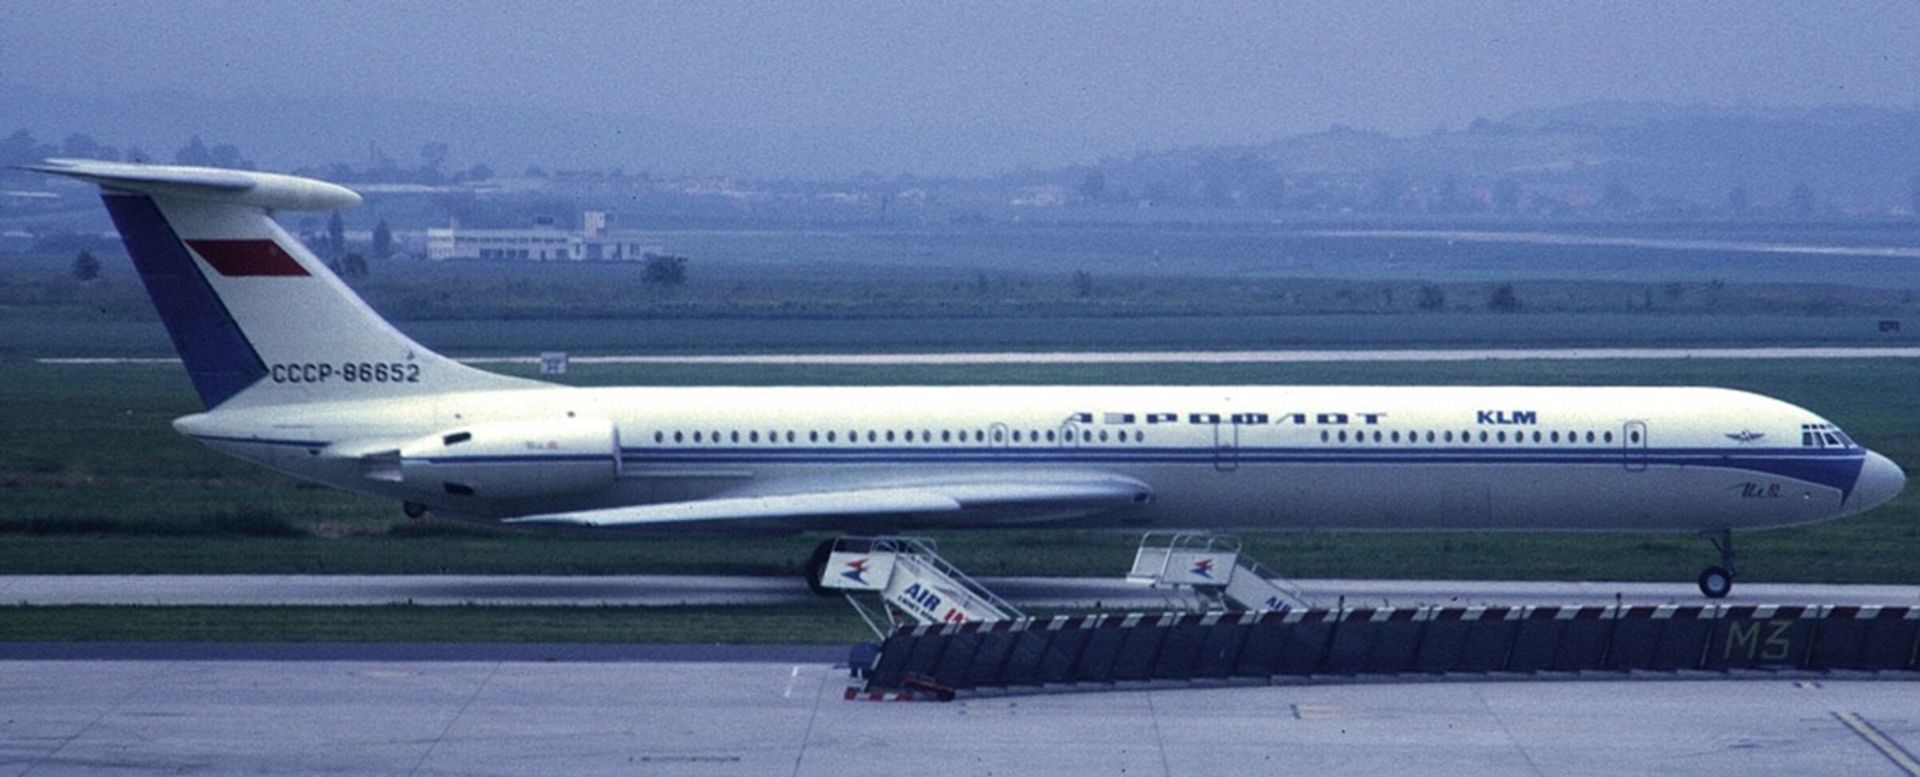 مرجع متخصصين ايران Ilyushin IL-62 KLM